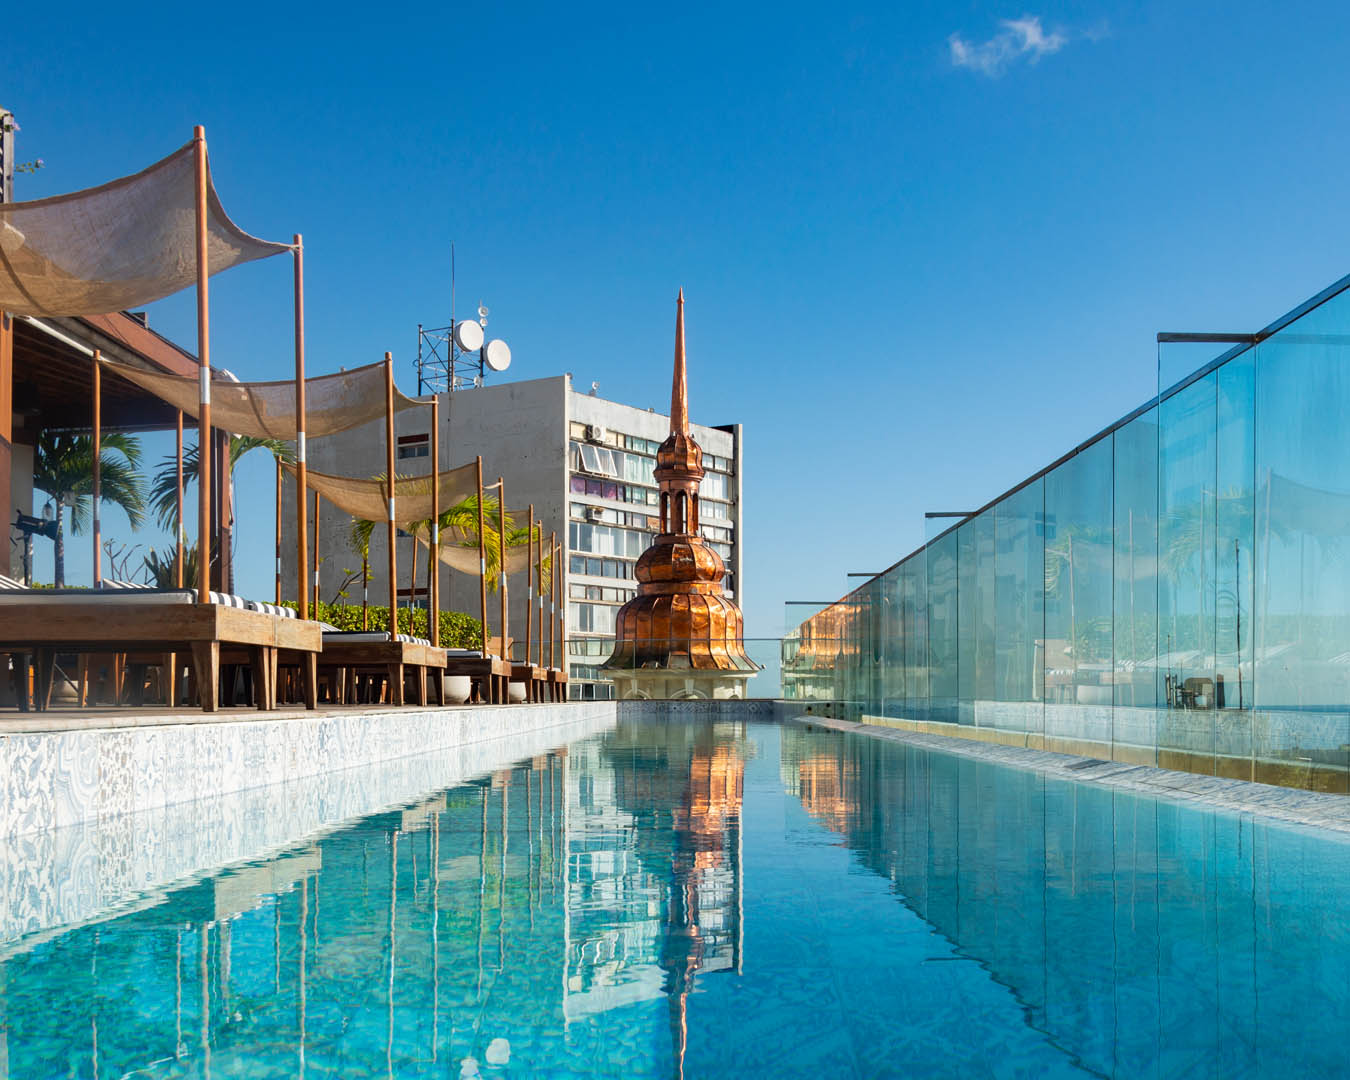 Foto em plano fechado, mostra a piscina do terraço do Fera Palace Hotel. O dia está ensolarado, as água está cristalina em tonalidade esverdeada e o céu está azul, sem nuvens.